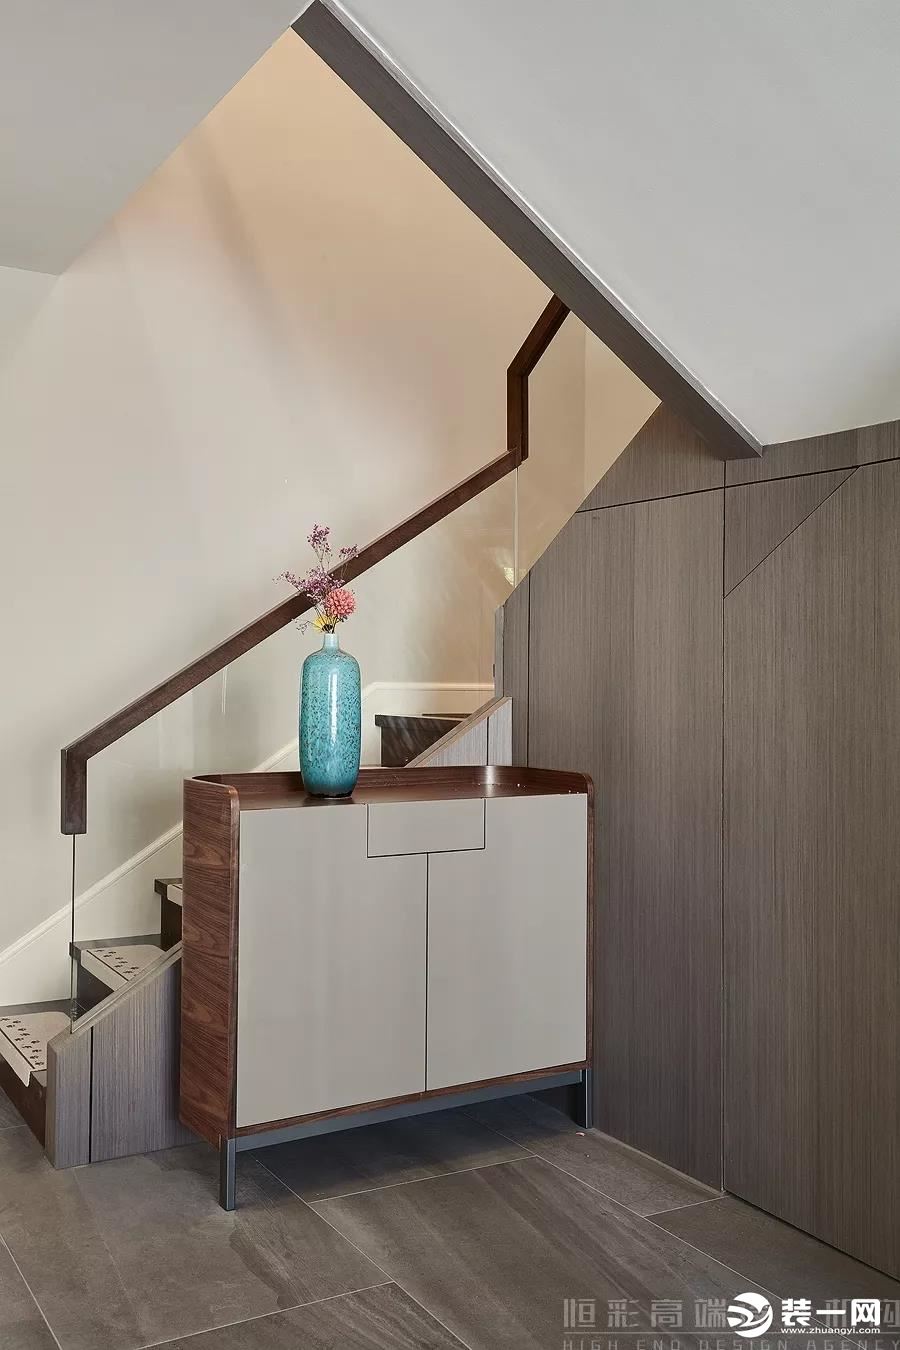 ▼楼梯间 对于跃层住宅来说，楼梯间是必不可少的。色彩和材质贴合整个家居空间的设计。